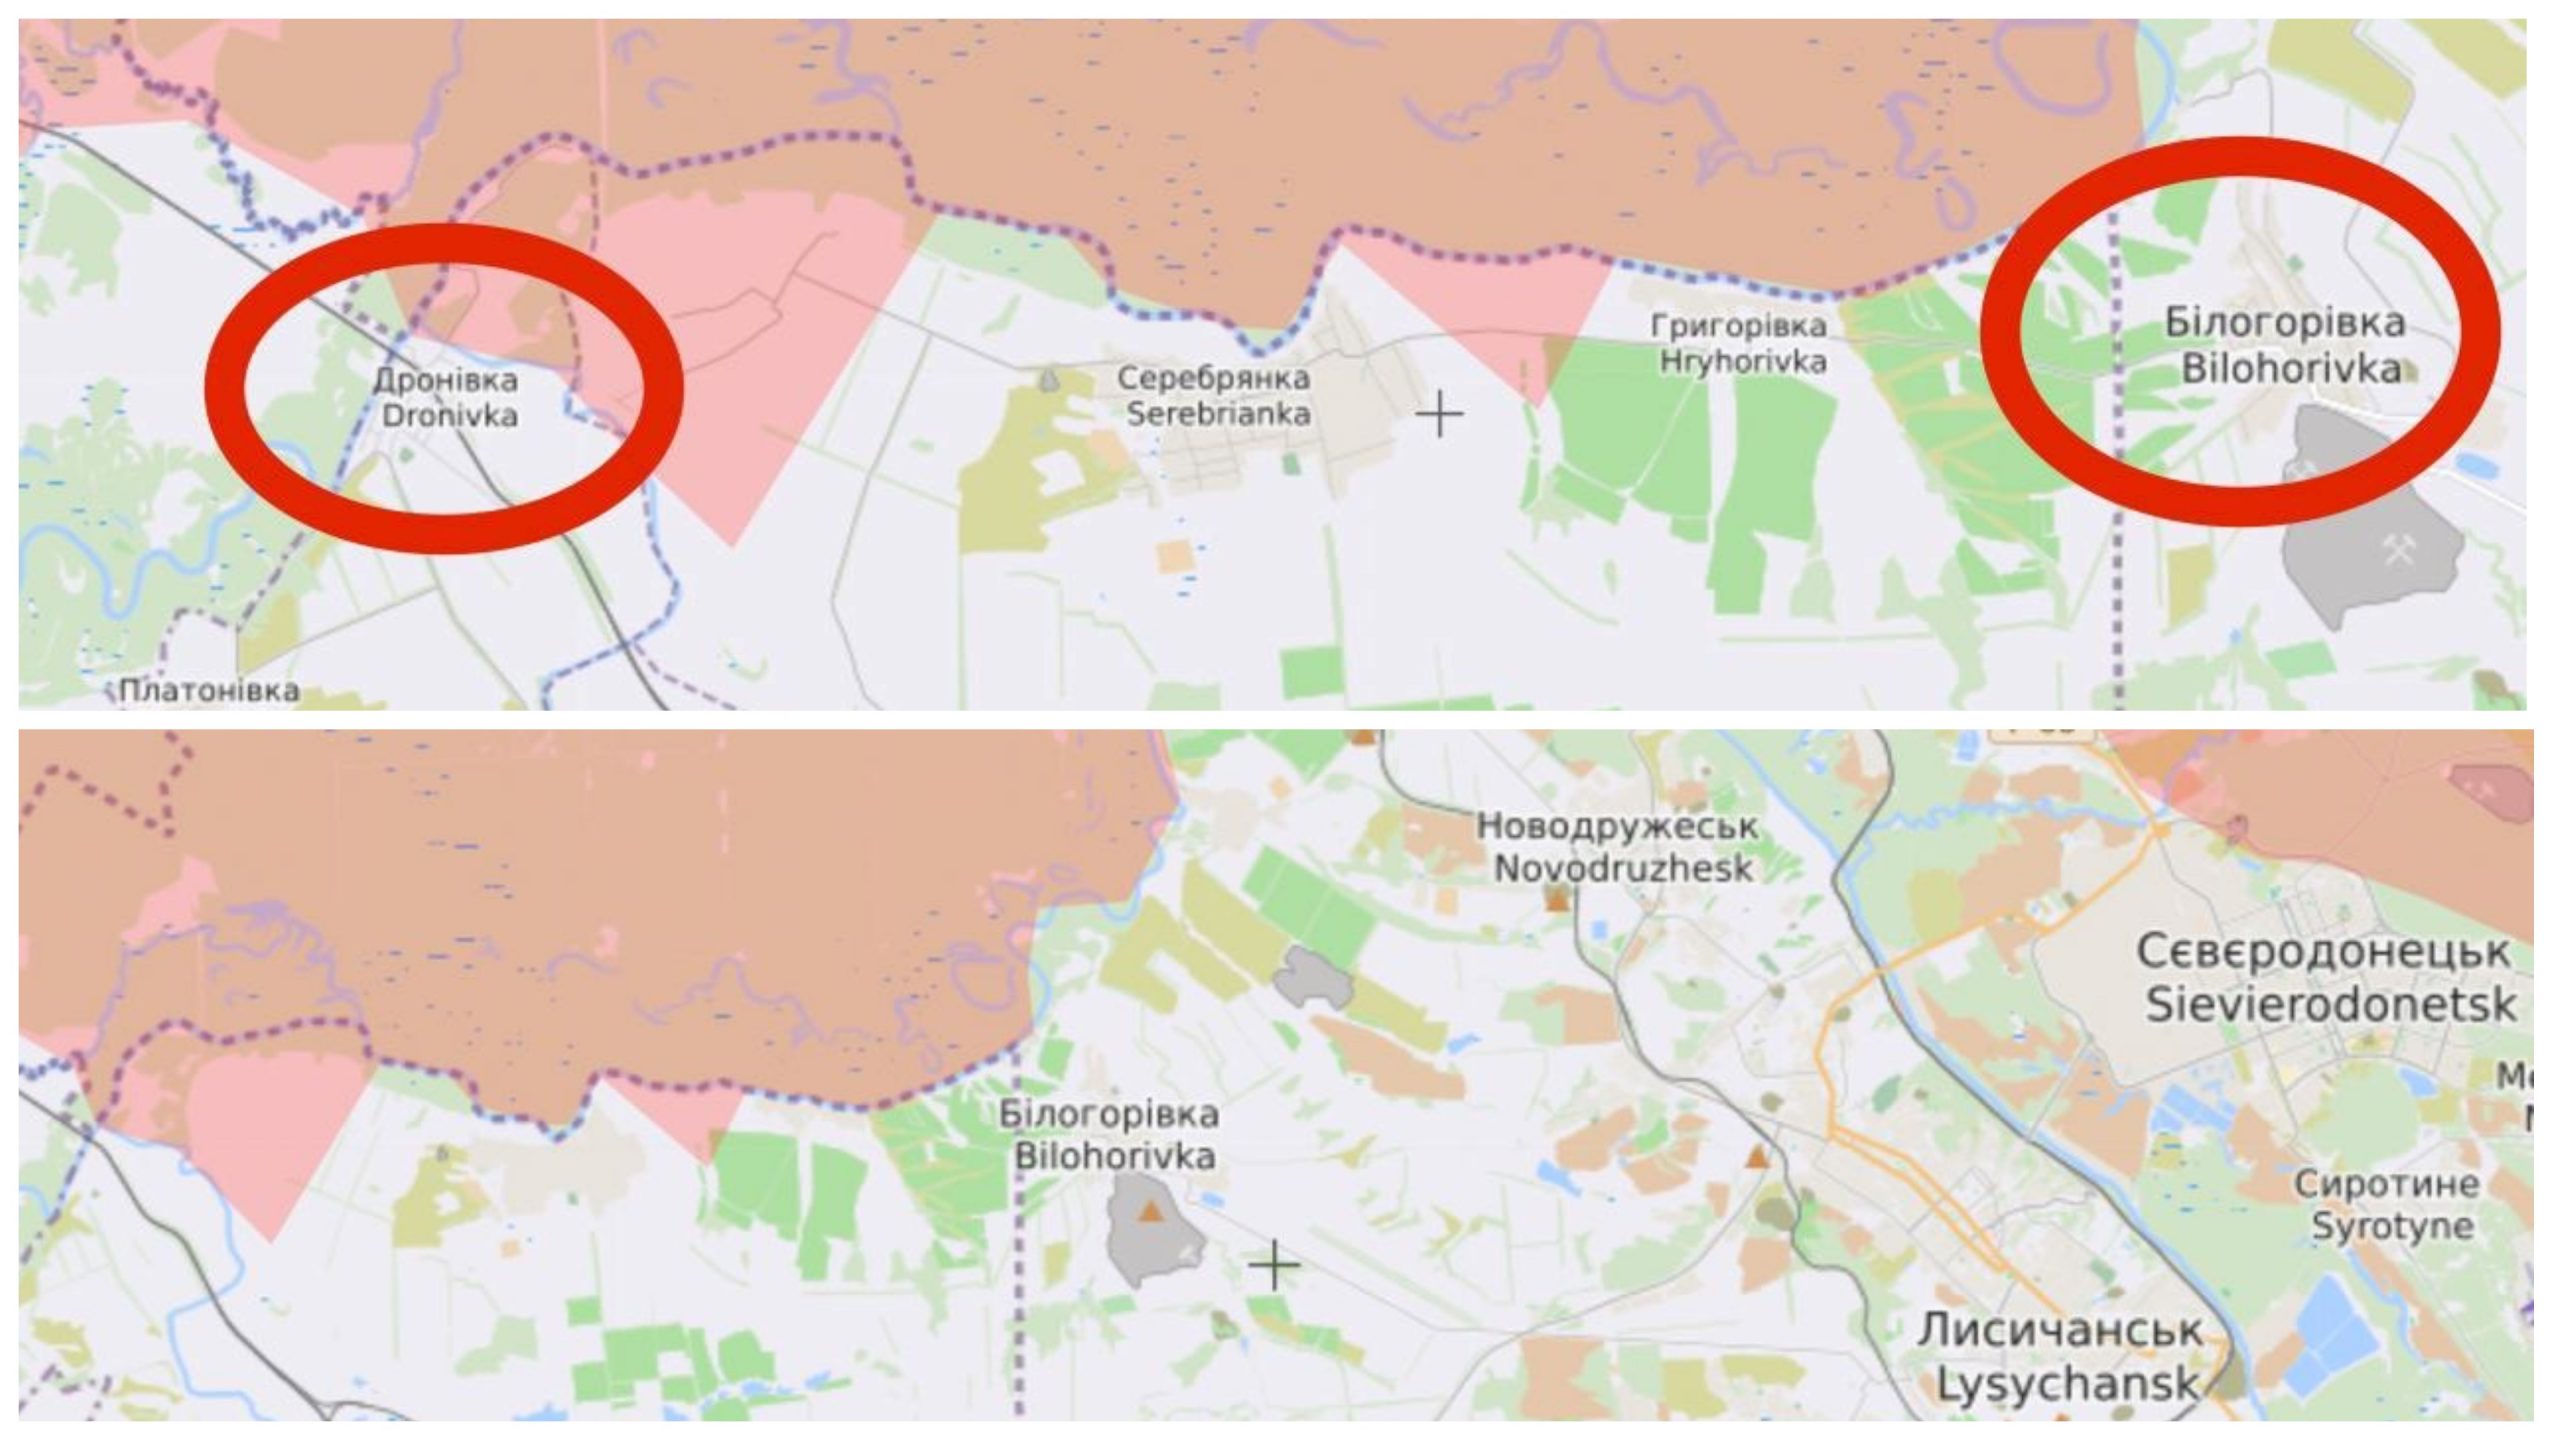 Дронівка – Білогорівка, Луганська область, травень 2022, Джерело: liveuamap